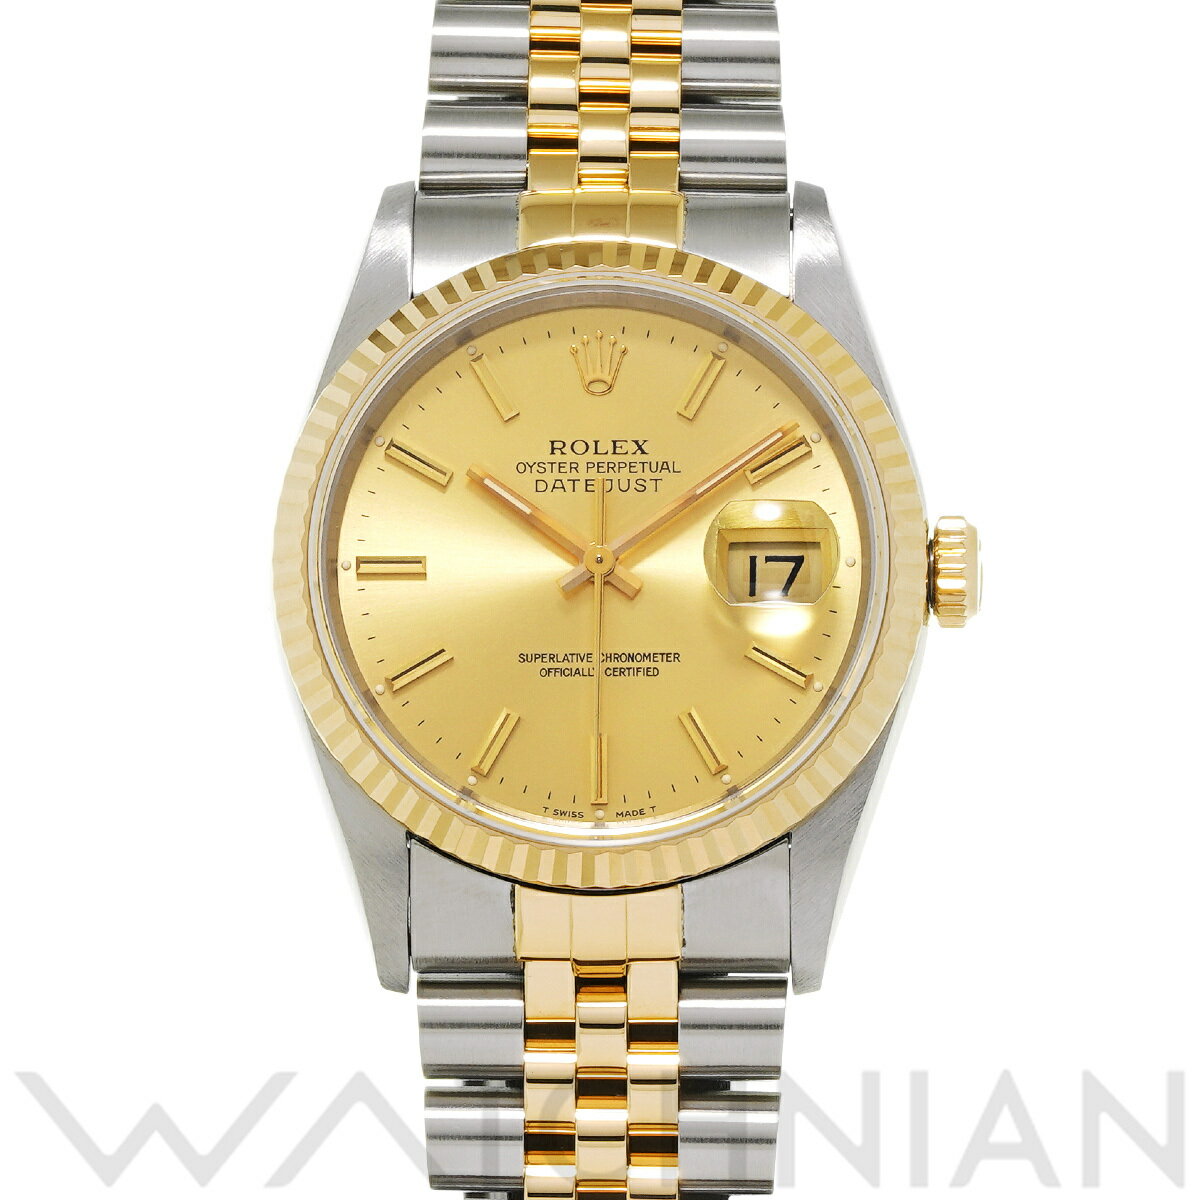 【4種選べるクーポン】【ローン60回払い無金利】【中古】 ロレックス ROLEX デイトジャスト 16233 S番(1994年頃製造) シャンパン メンズ 腕時計 ロレックス 時計 高級腕時計 ブランド